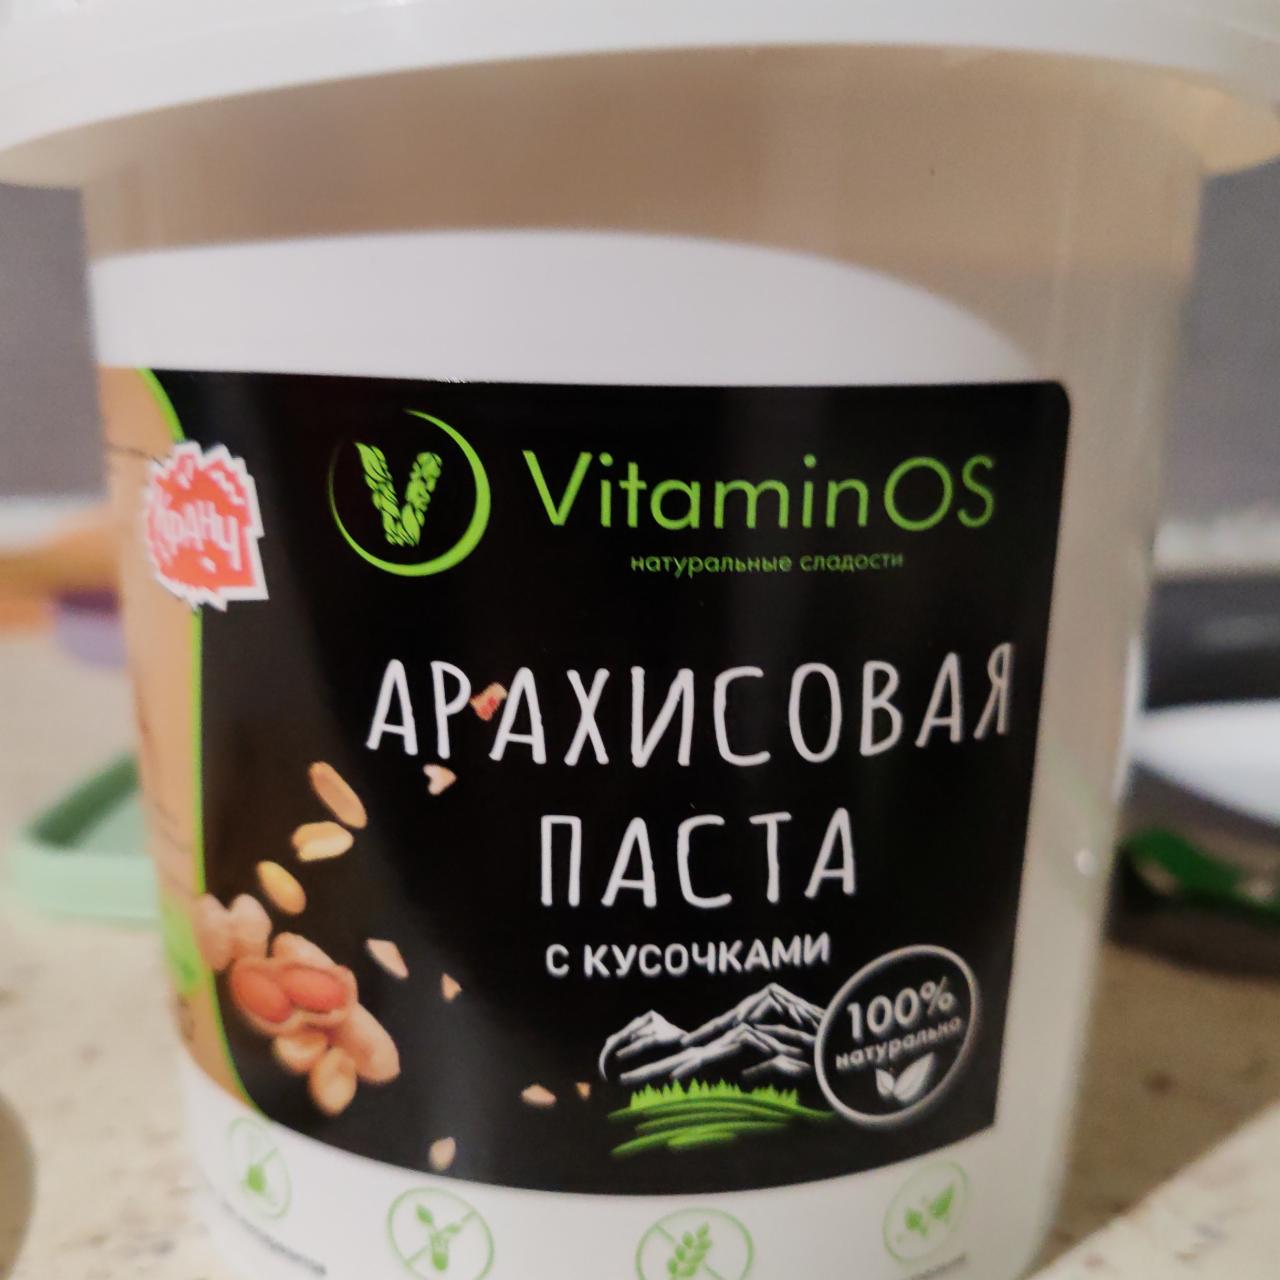 Фото - Арахисовая паста с кусочками VitaminOs